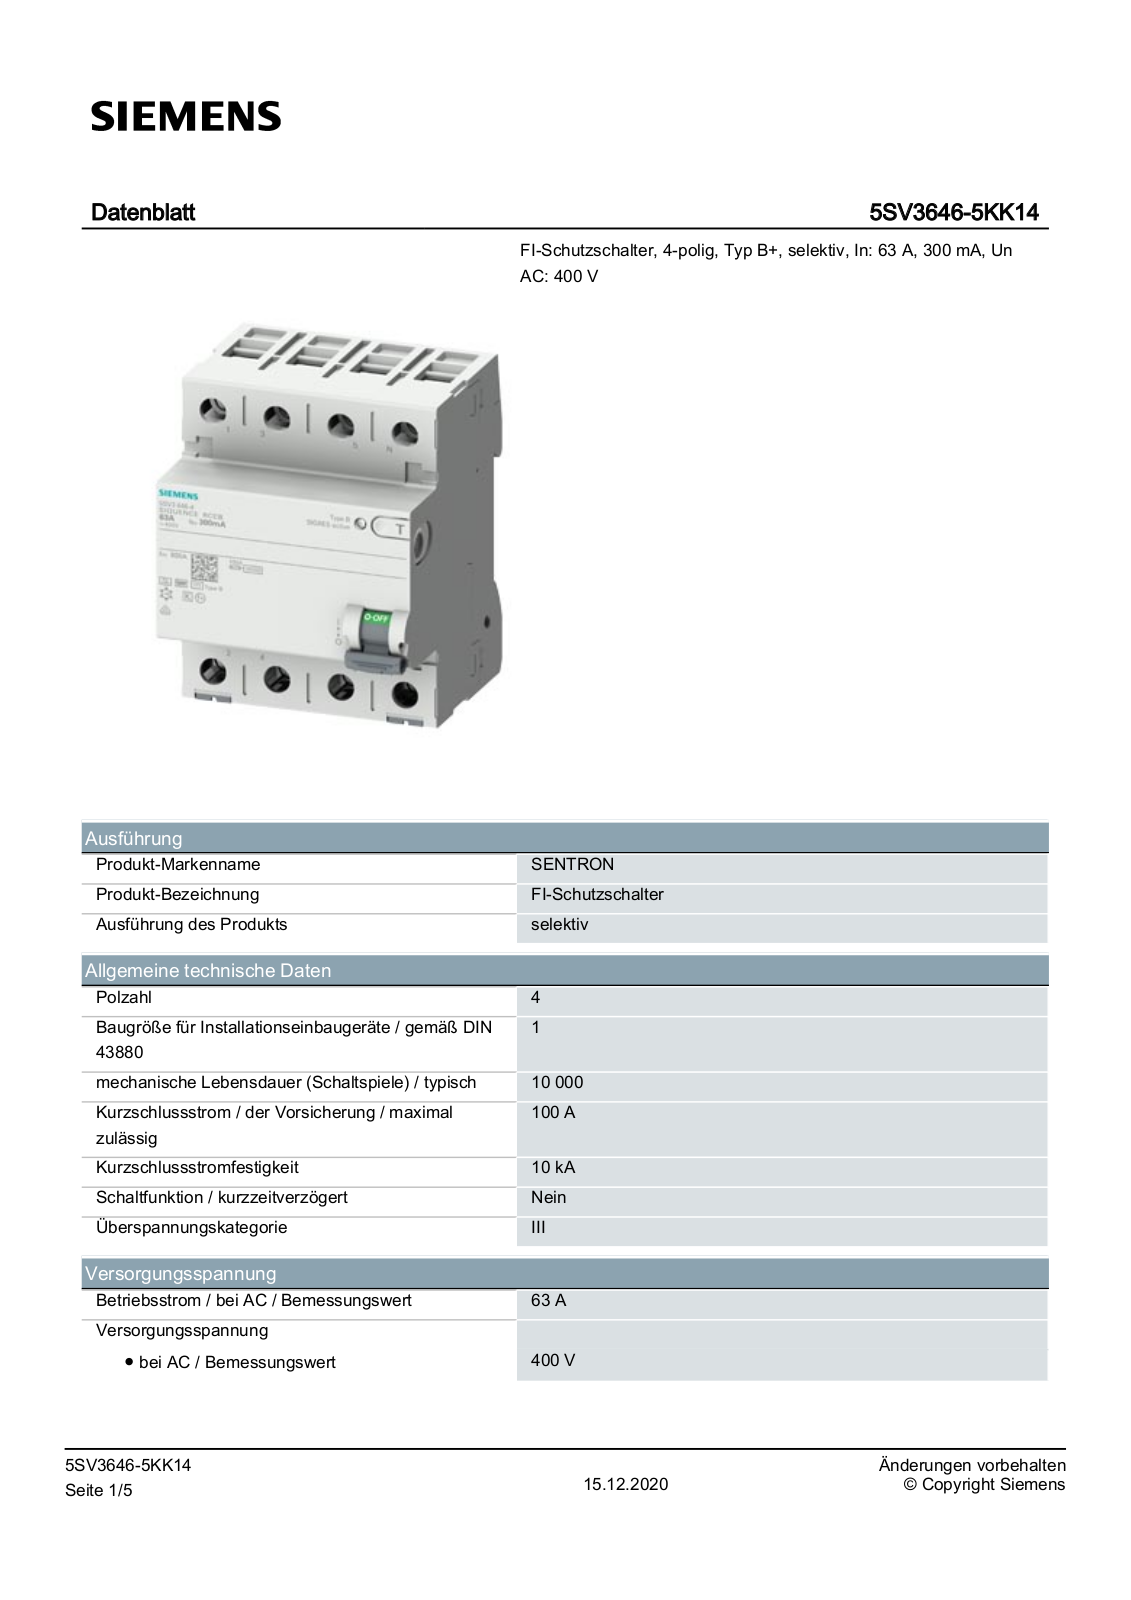 Siemens 5SV3646-5KK14 Datenblatt